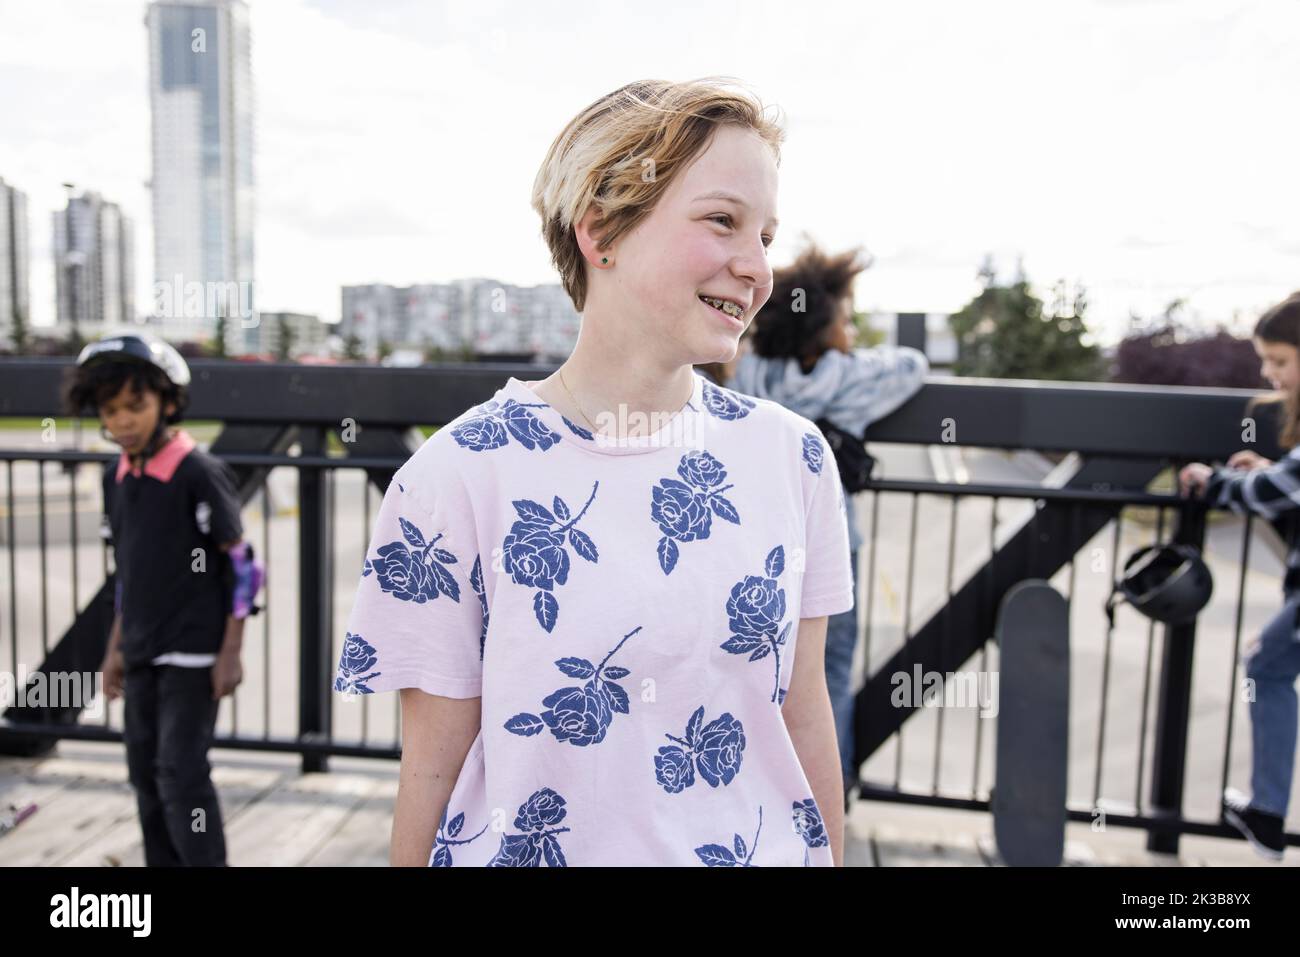 Portrait of girl in flowery tshirt on bridge over skatepark Stock Photo